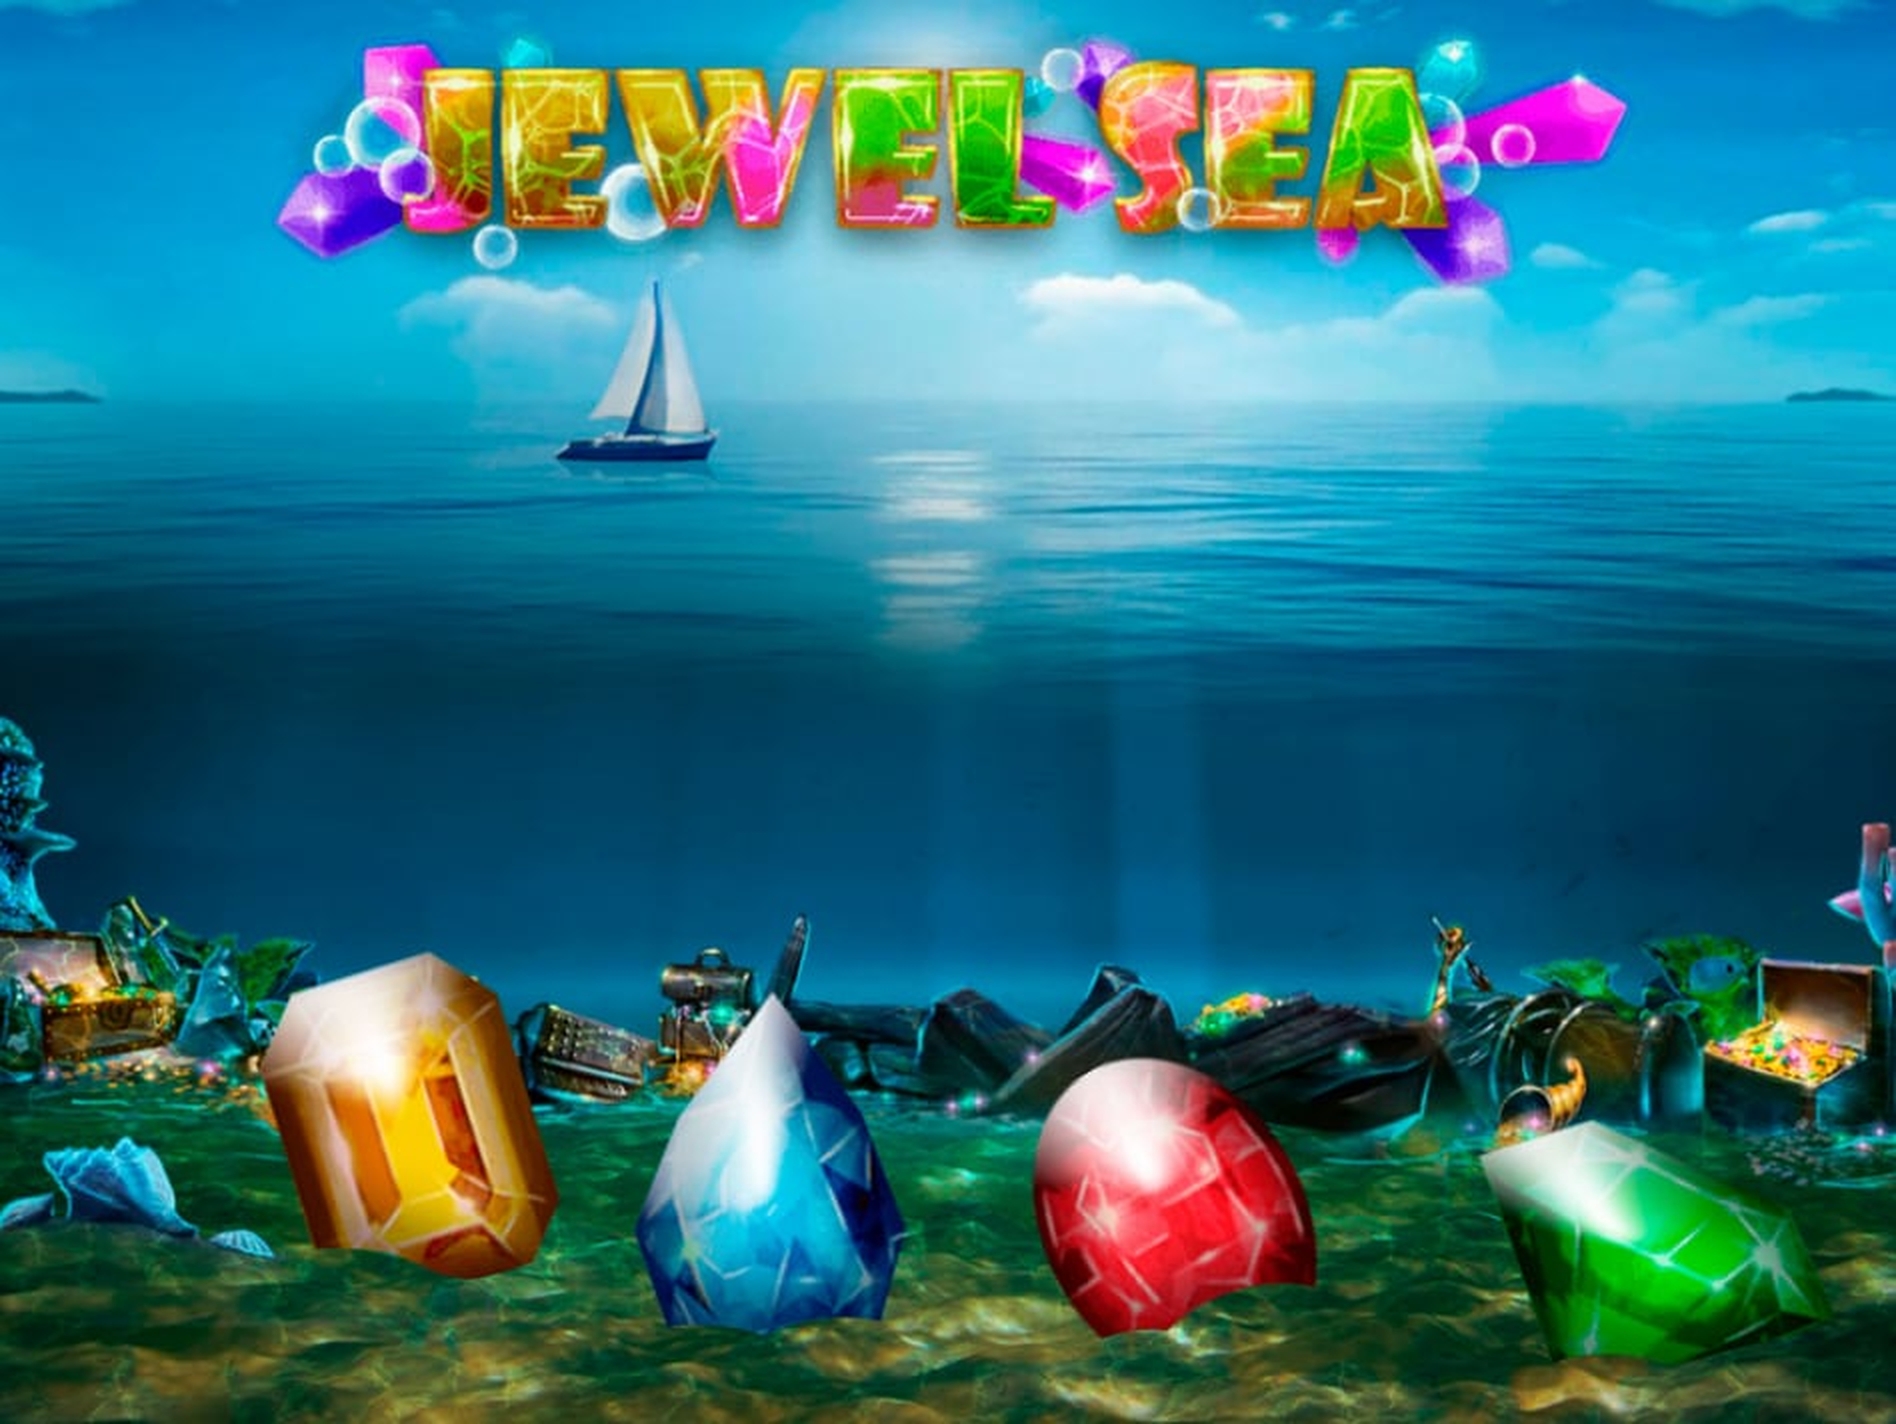 Jewel Sea demo